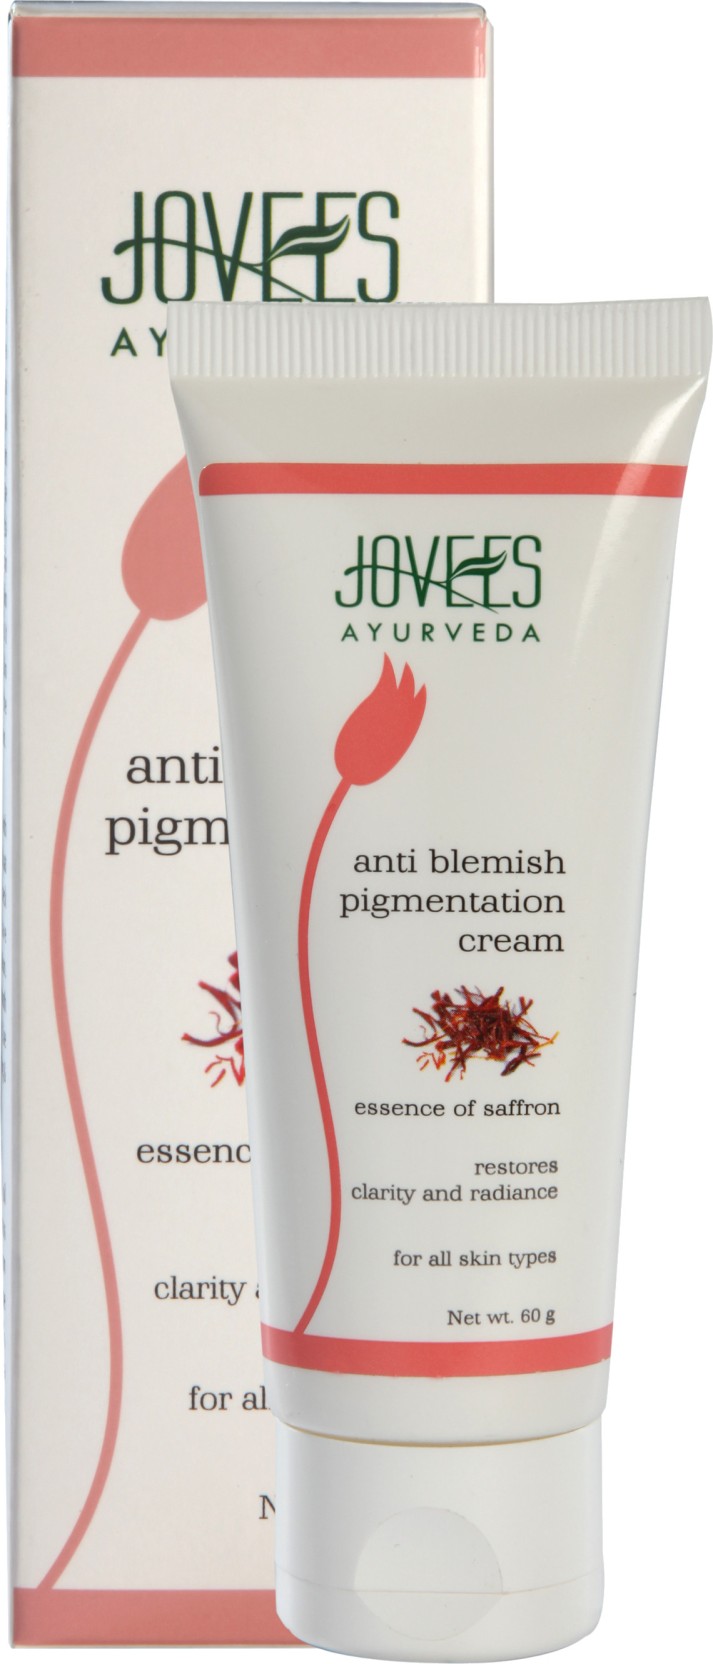 Jovees Anti Pigmentation Blemish Cream - Price in India 